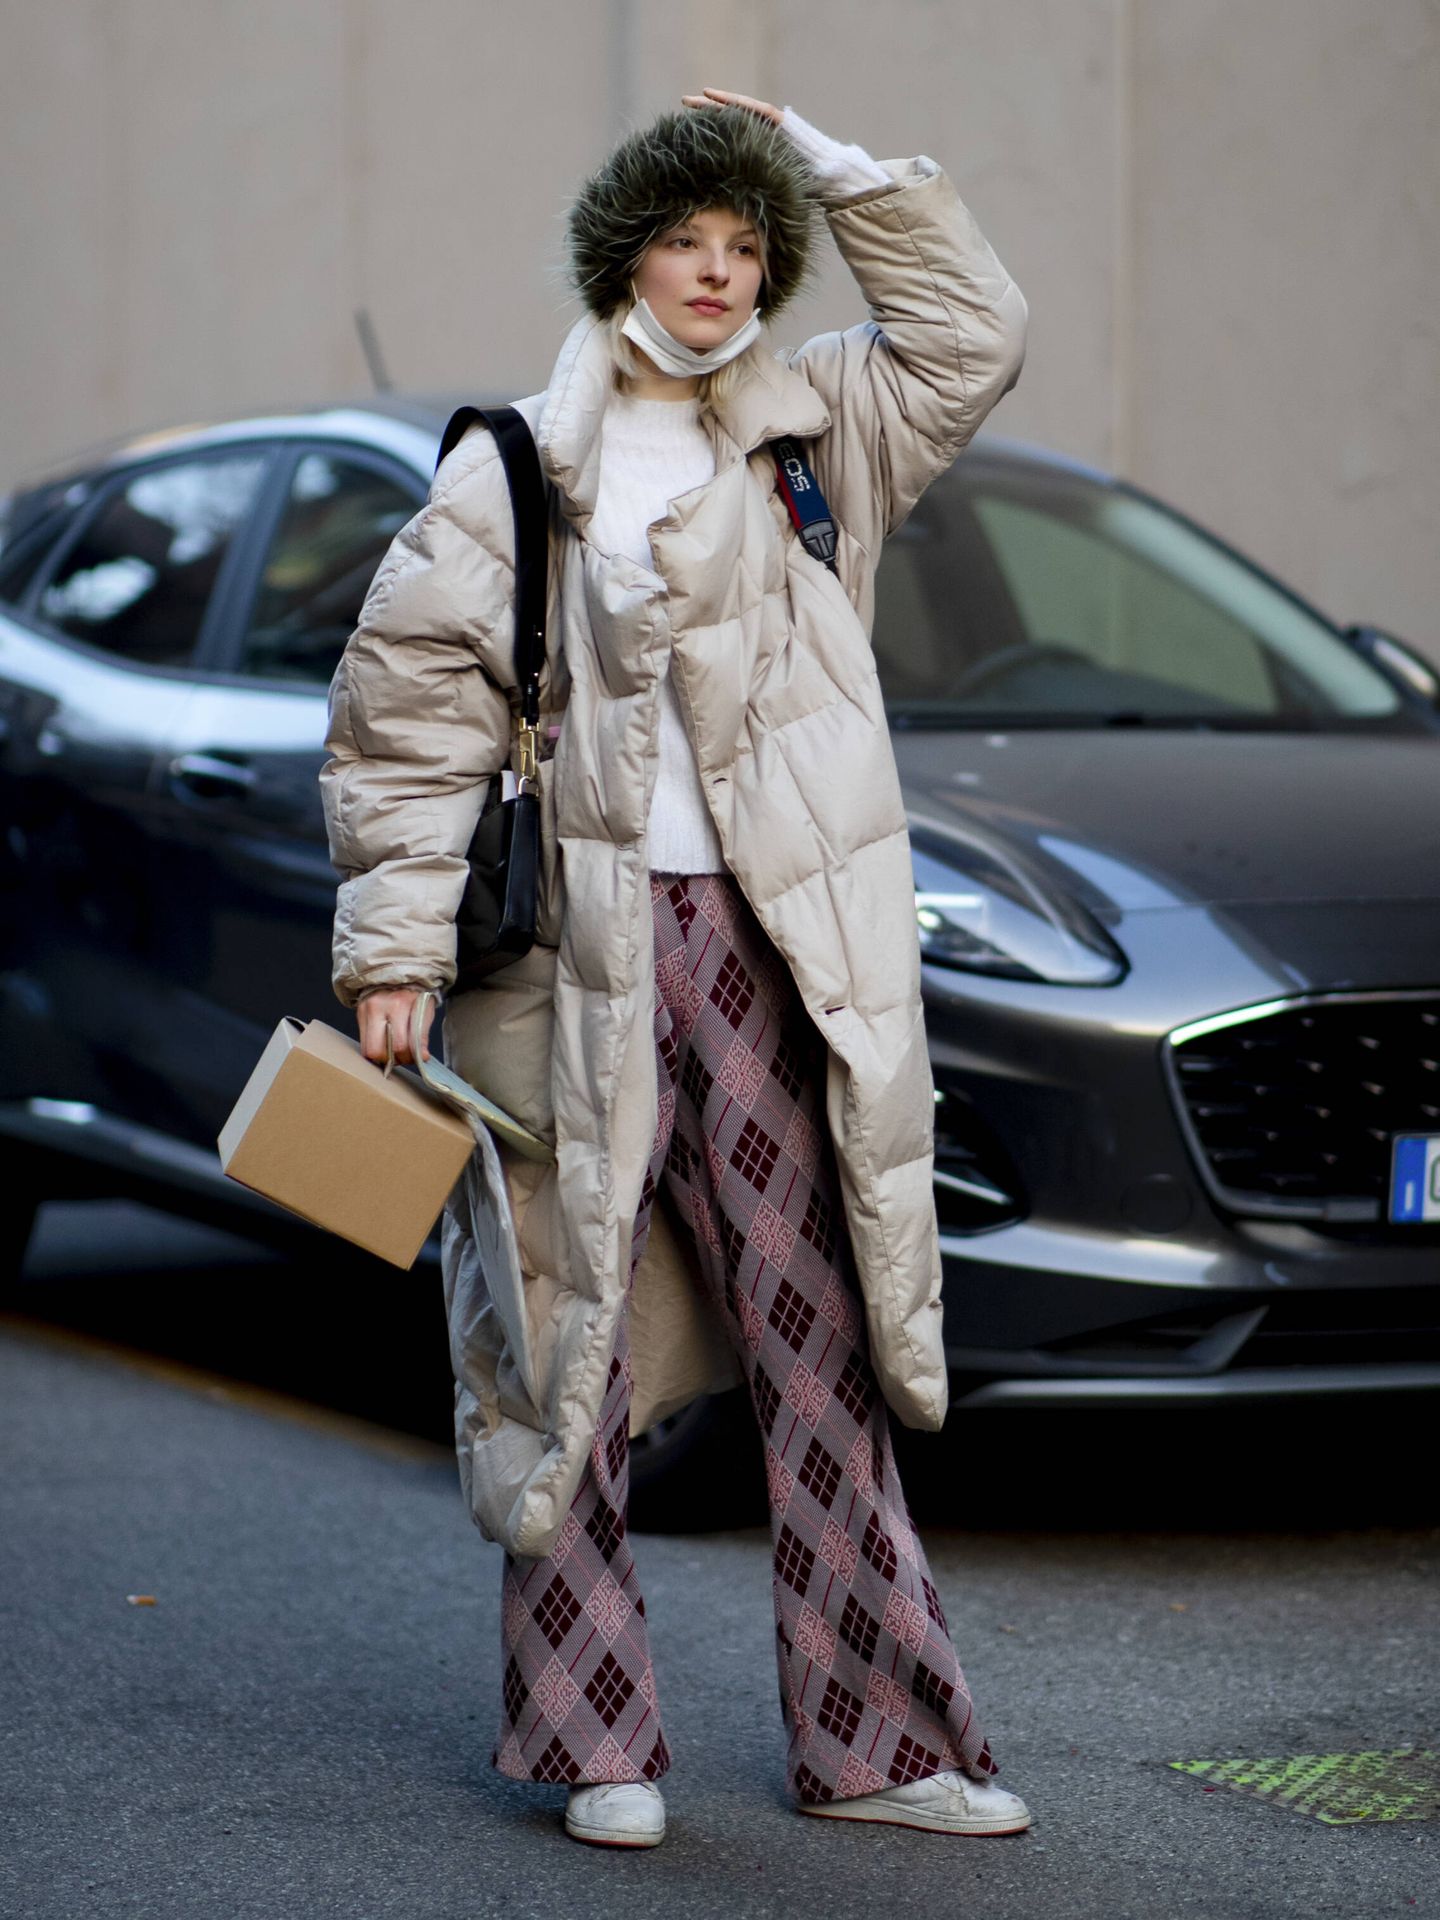 Los abrigos acolchados se imponen en el street style. (Imaxtree)